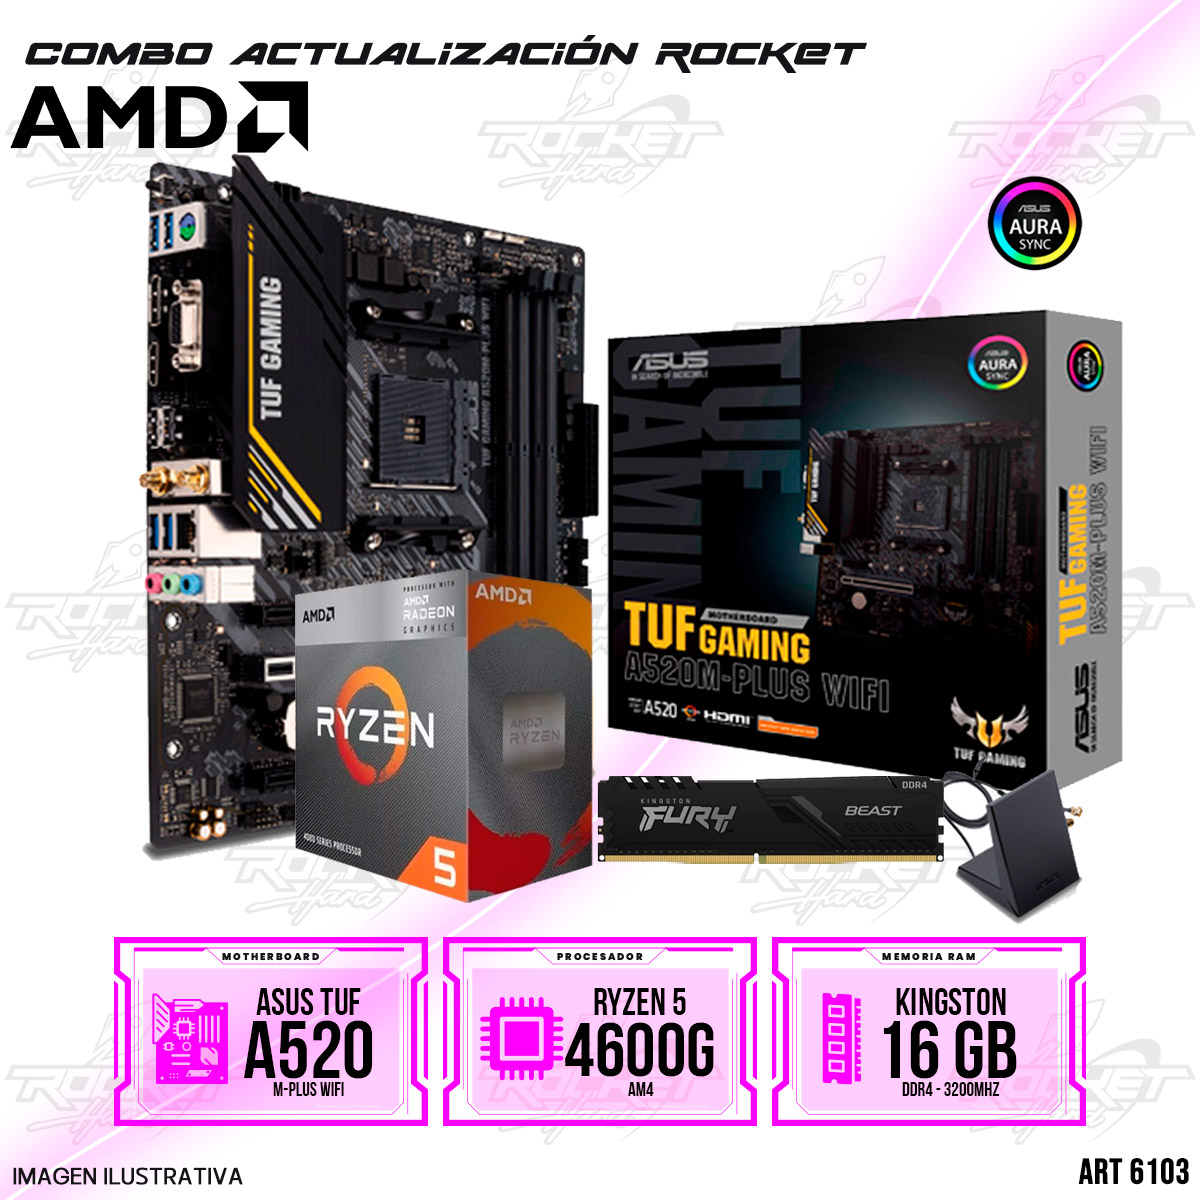 COMBO ROCKET AMD RYZEN 5 4600G - A520 WIFI - 16GB RAM